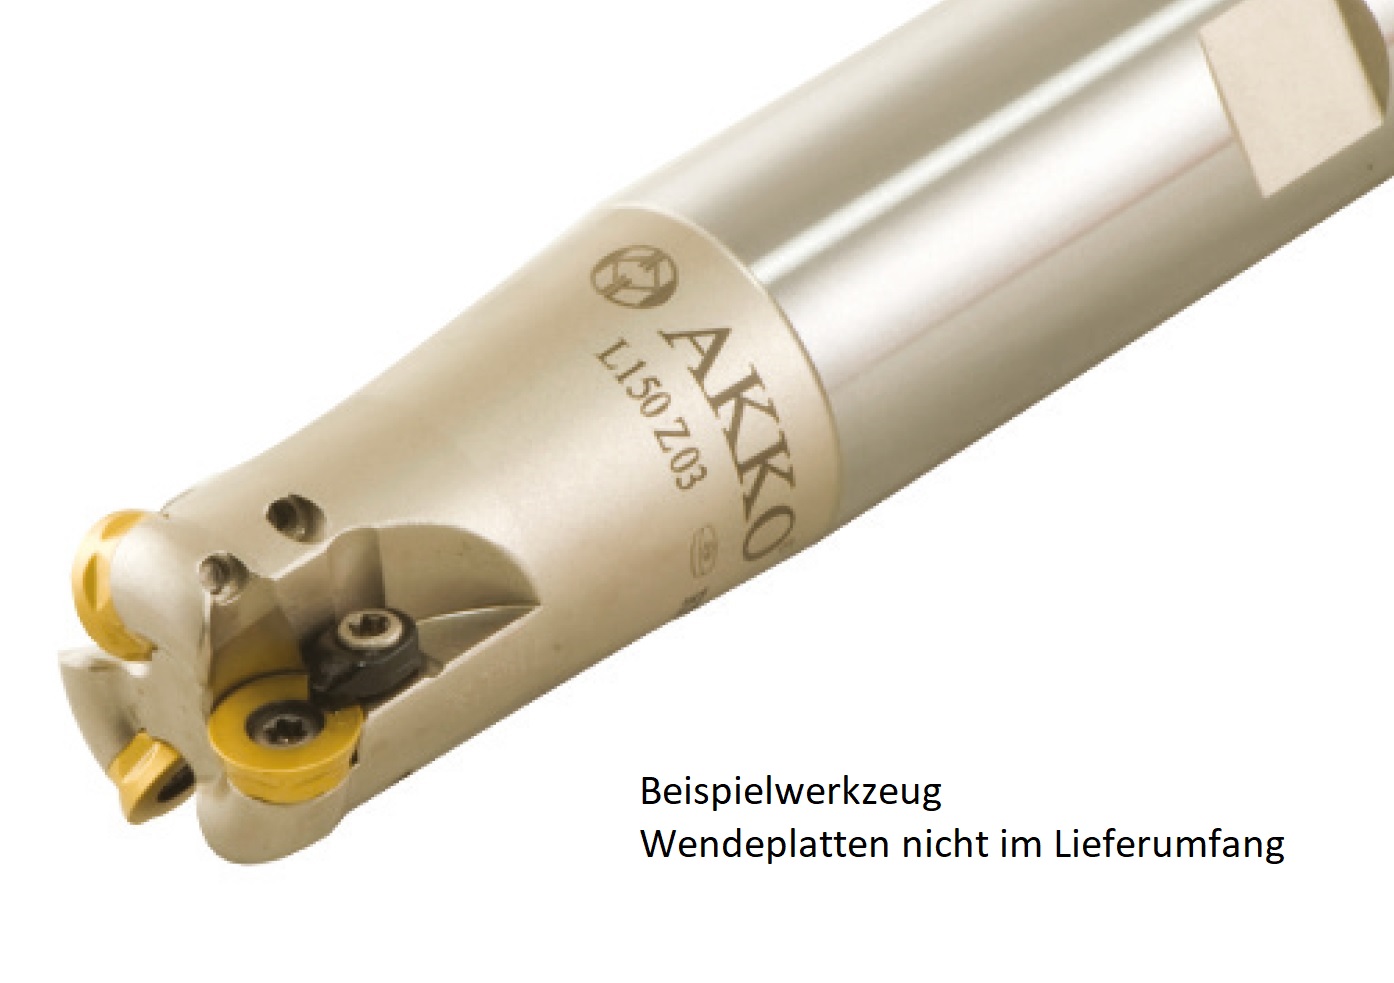 AKKO-Hochvorschub-Schaftfräser ø 21 mm für Wendeplatten, kompatibel mit ISO RD.. 1003
Schaft-ø 20, ohne Innenkühlung, Z=2